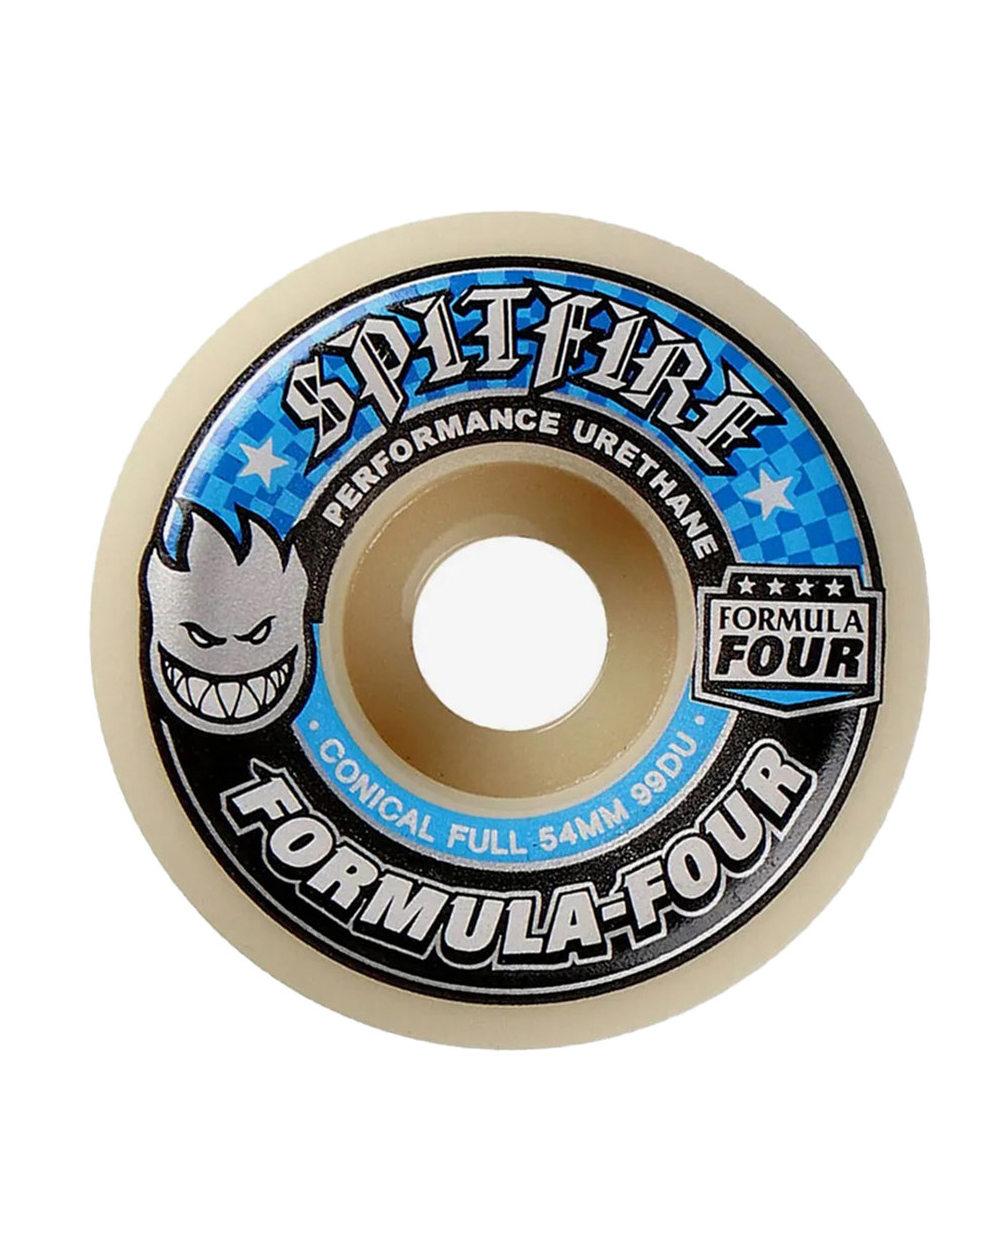 Spitfire Ruedas Skateboard Formula Four Conical Full 54mm 99A 4 piezas